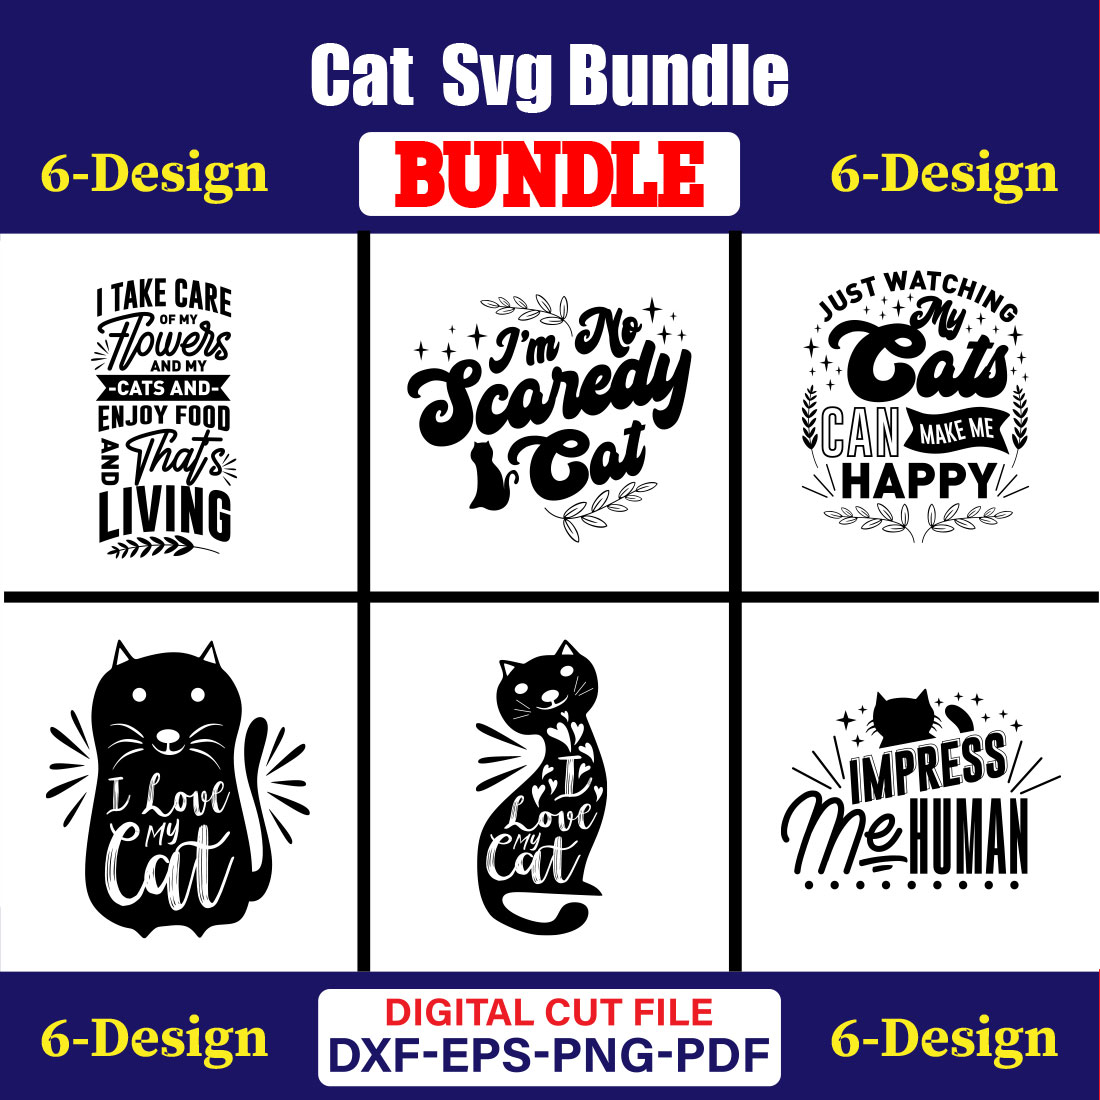 Cat T-shirt Design Bundle Vol-14 cover image.